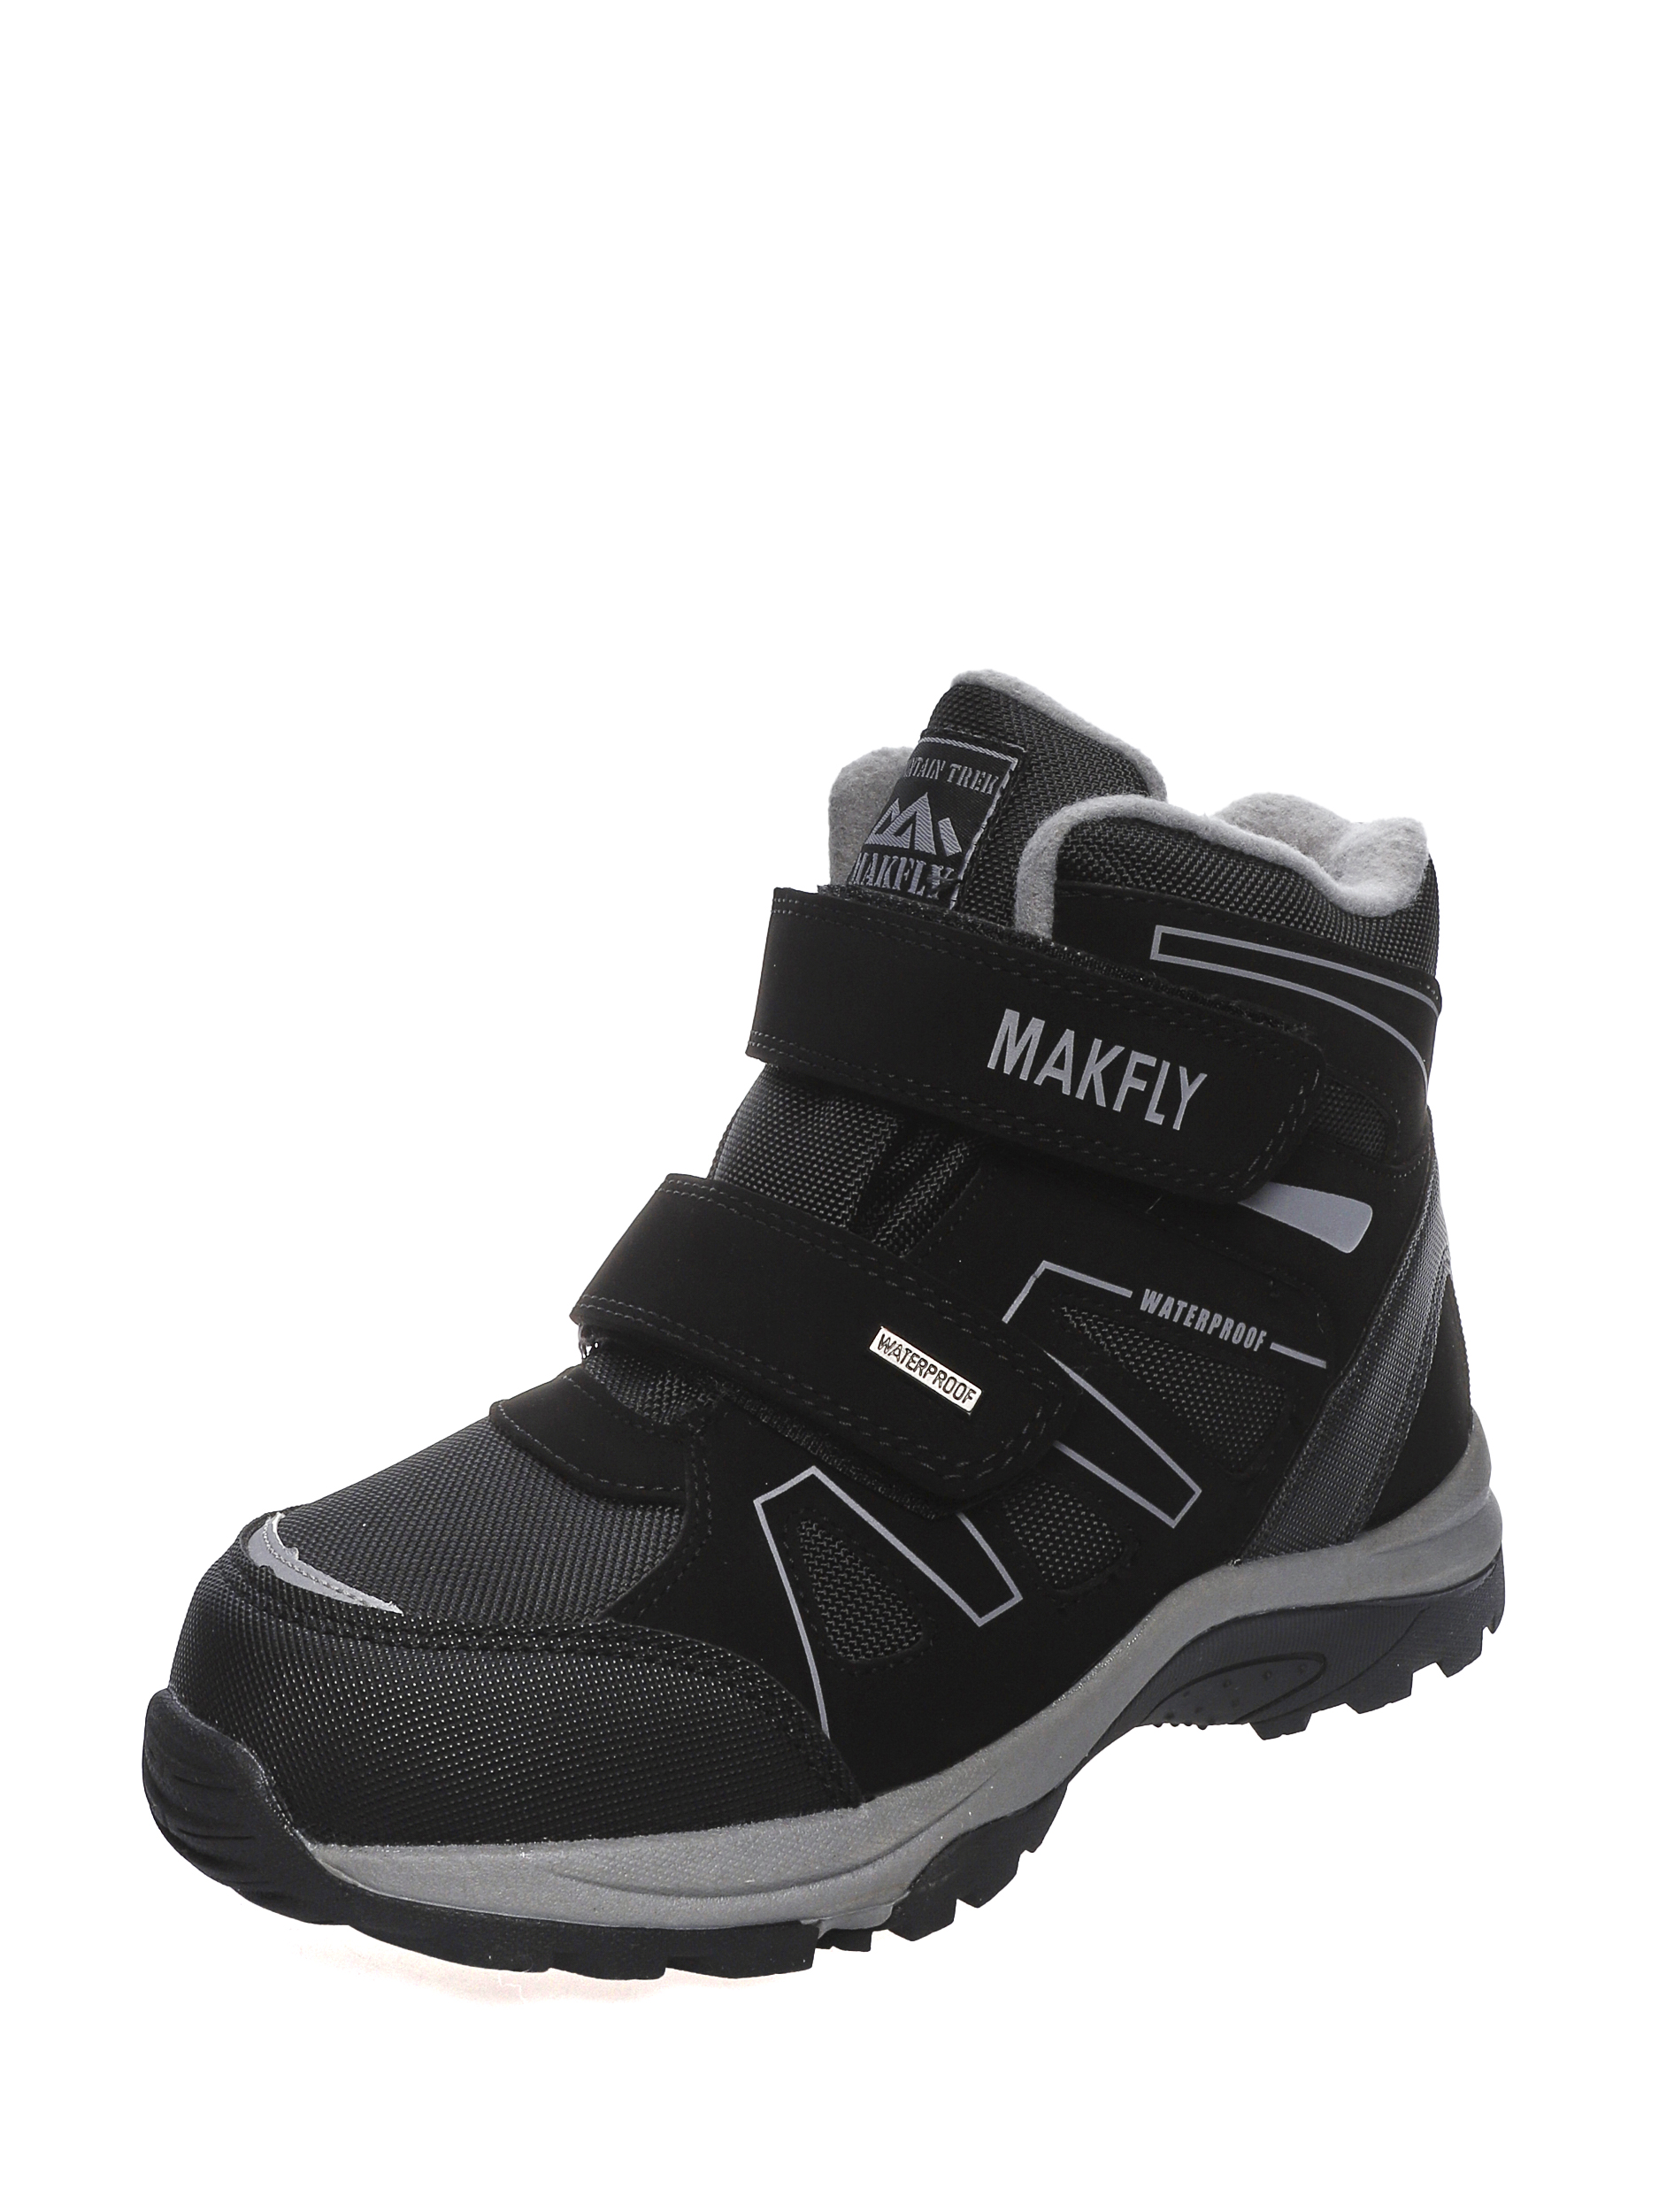 Ботинки подростковые MAKFLY 08-198-051 черный р. 37